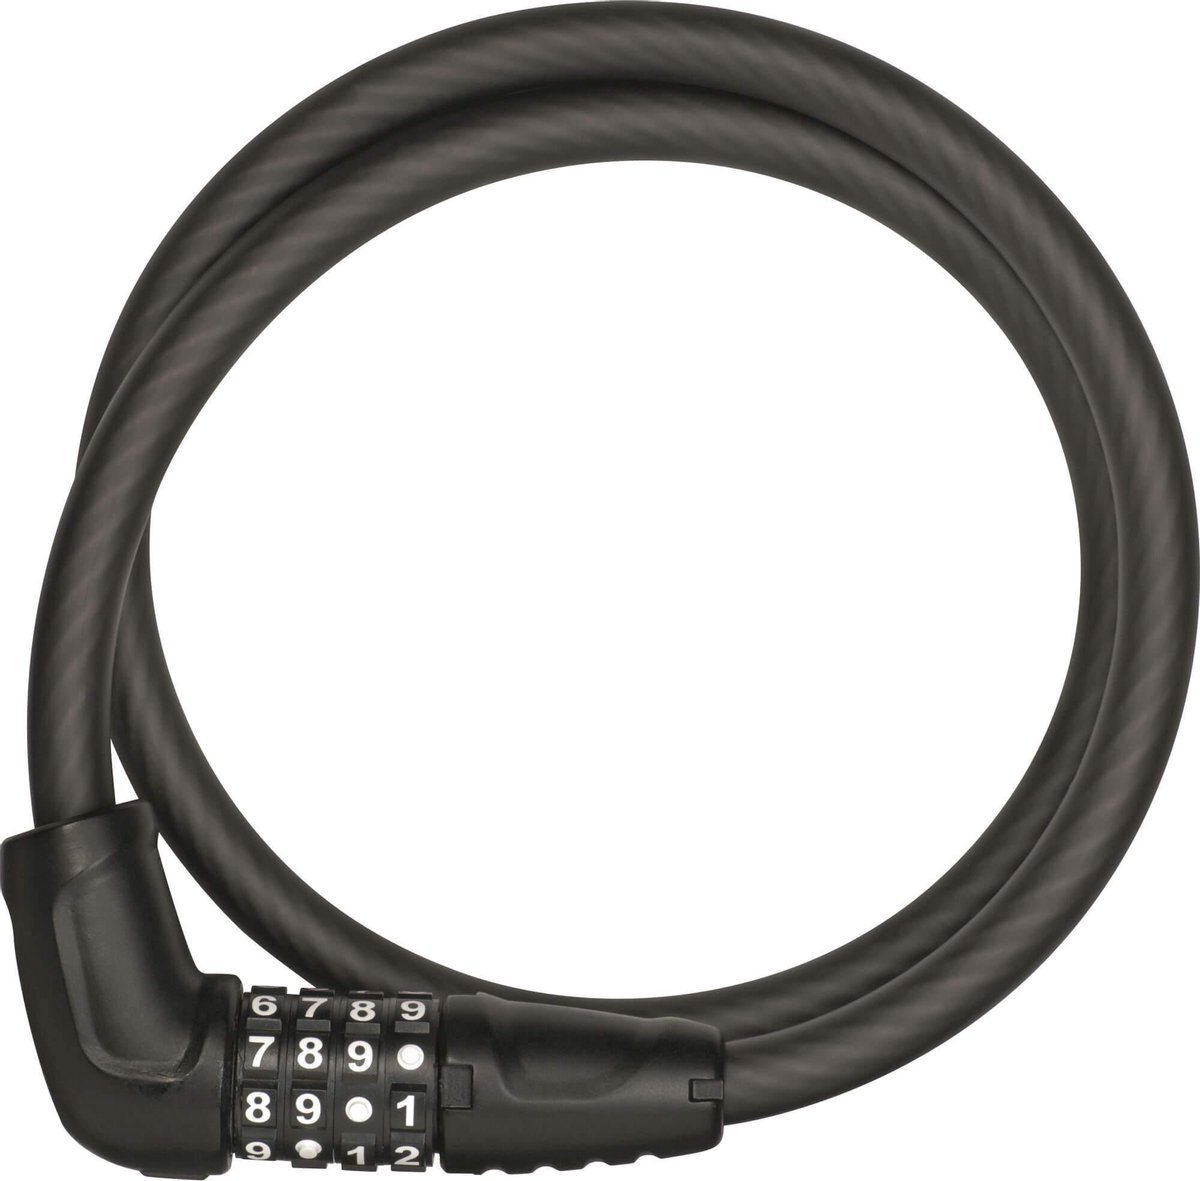 Abus 5410C SR Cable Lock, black